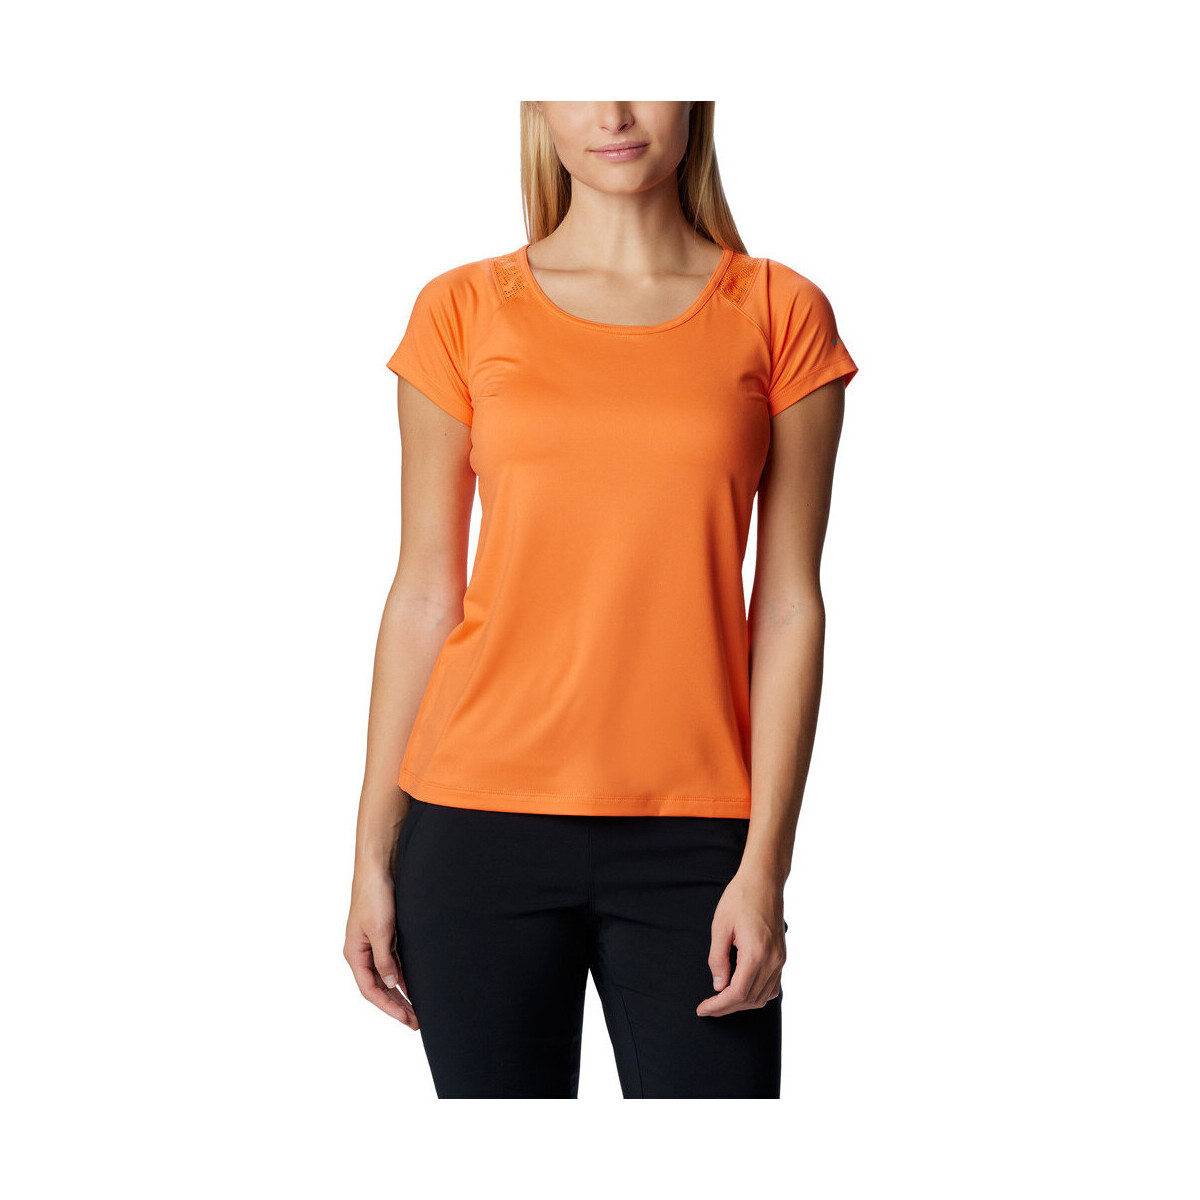 Vêtements Femme Chemises / Chemisiers Columbia Peak To Point II SS Tee Orange